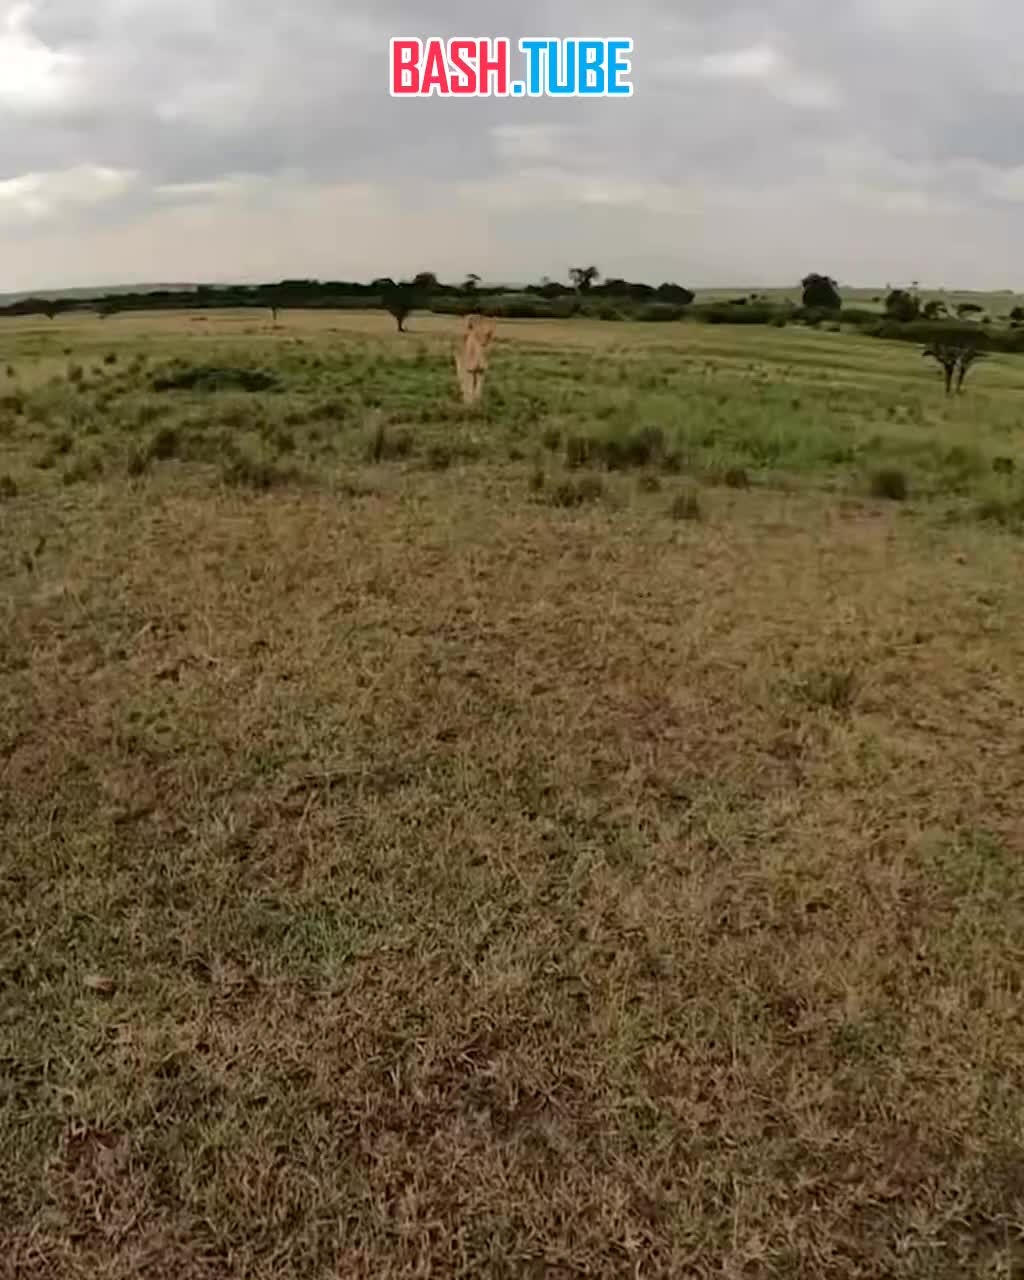  Львица в Кении отобрала у блогера камеру с селфи палкой и побежала снимать окрестности